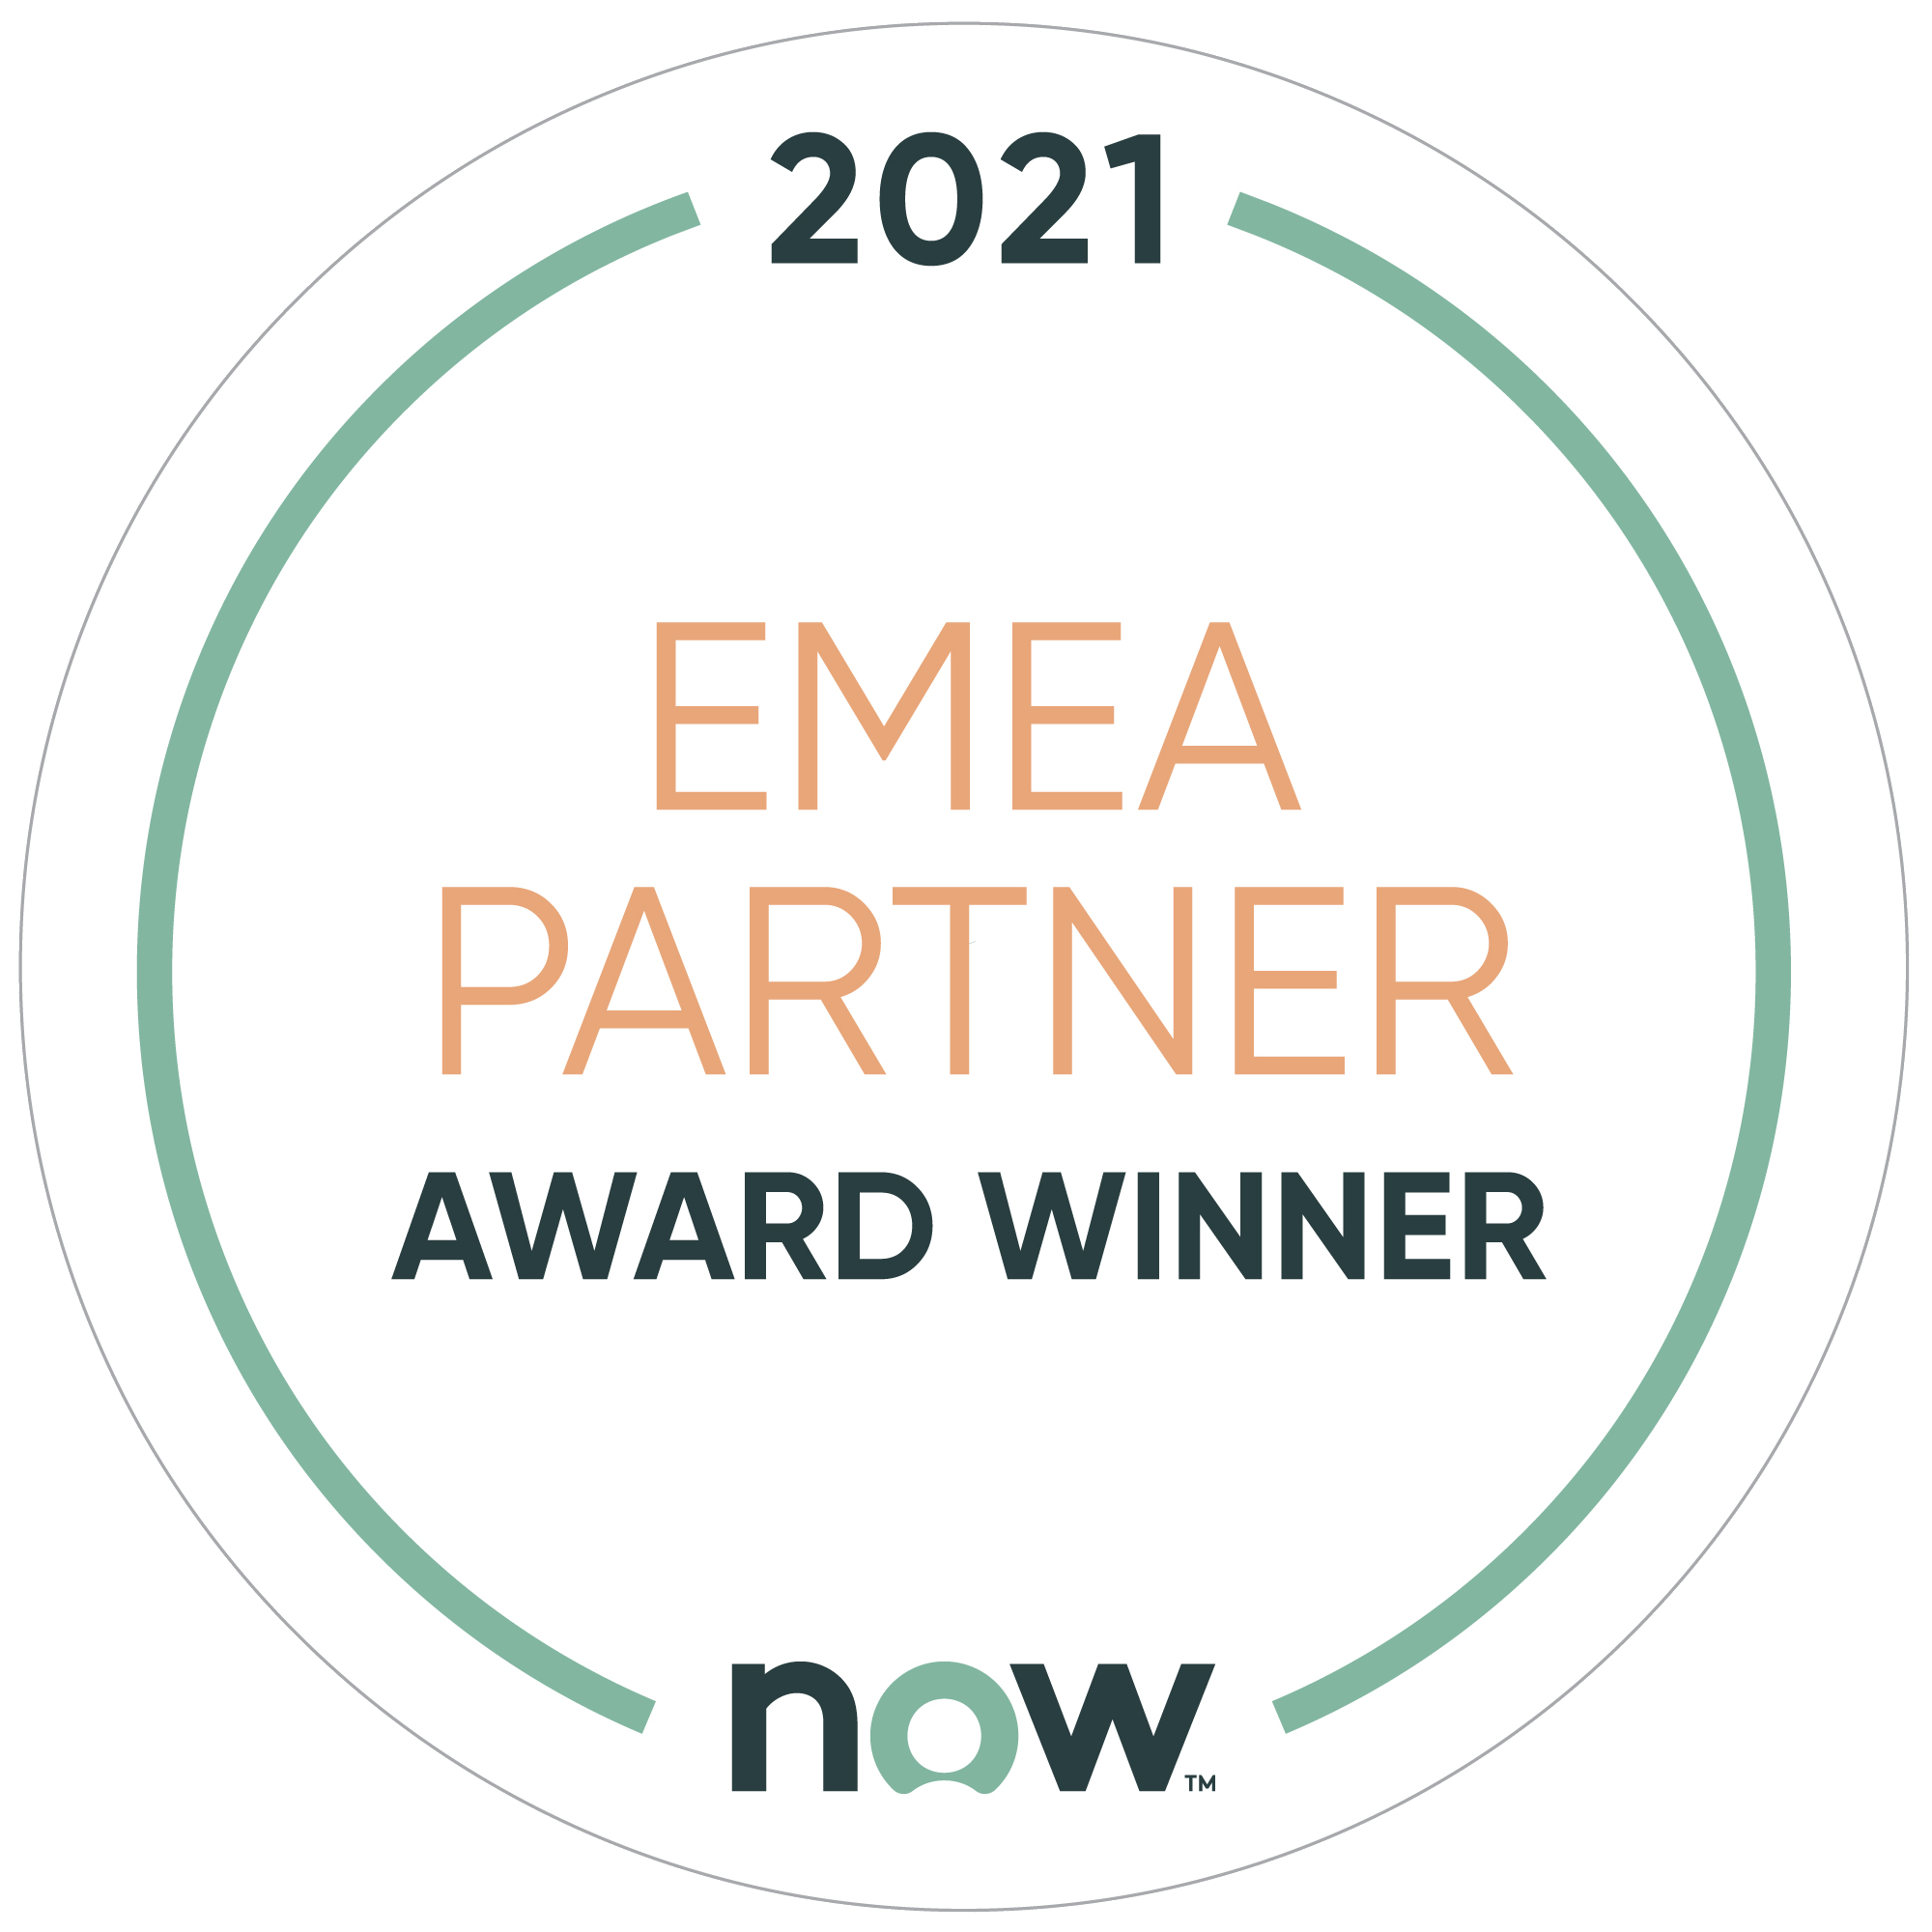 Devoteam is a EMEA ServiceNow Partner Award Winner in 2021